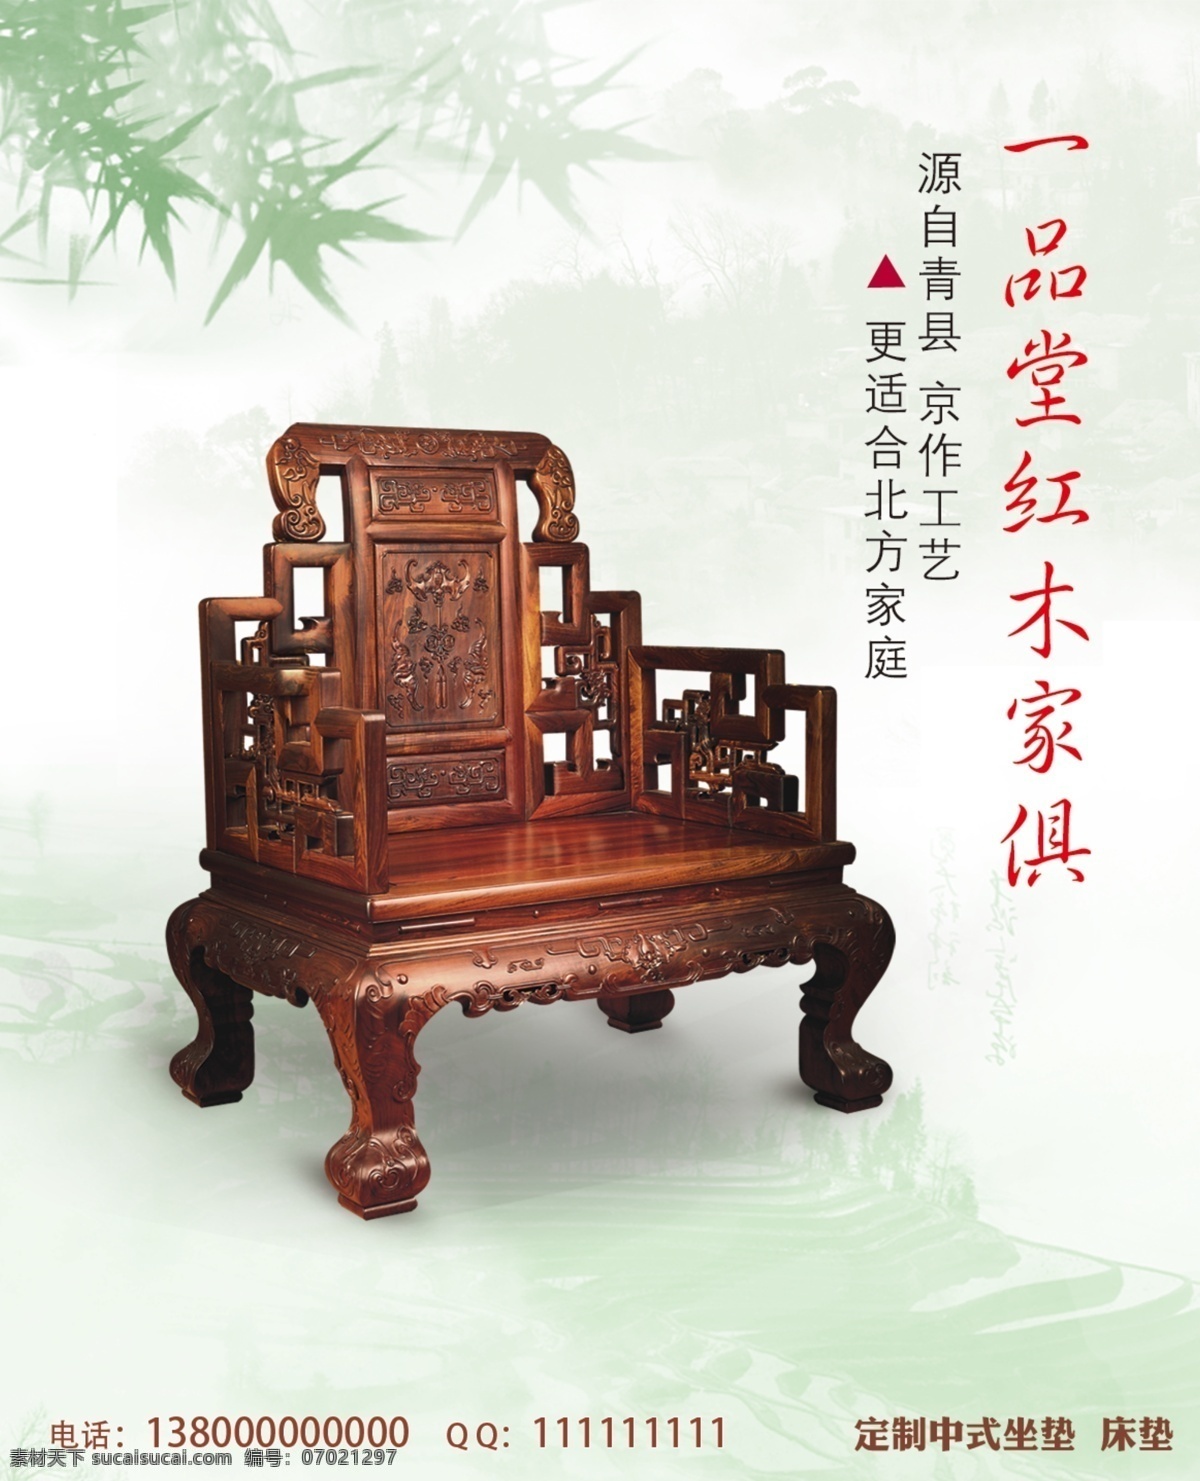 一品 堂 红木 家俱 广告宣传 红木家具 家具 青色 山水 椅子 中国风 原创设计 原创海报